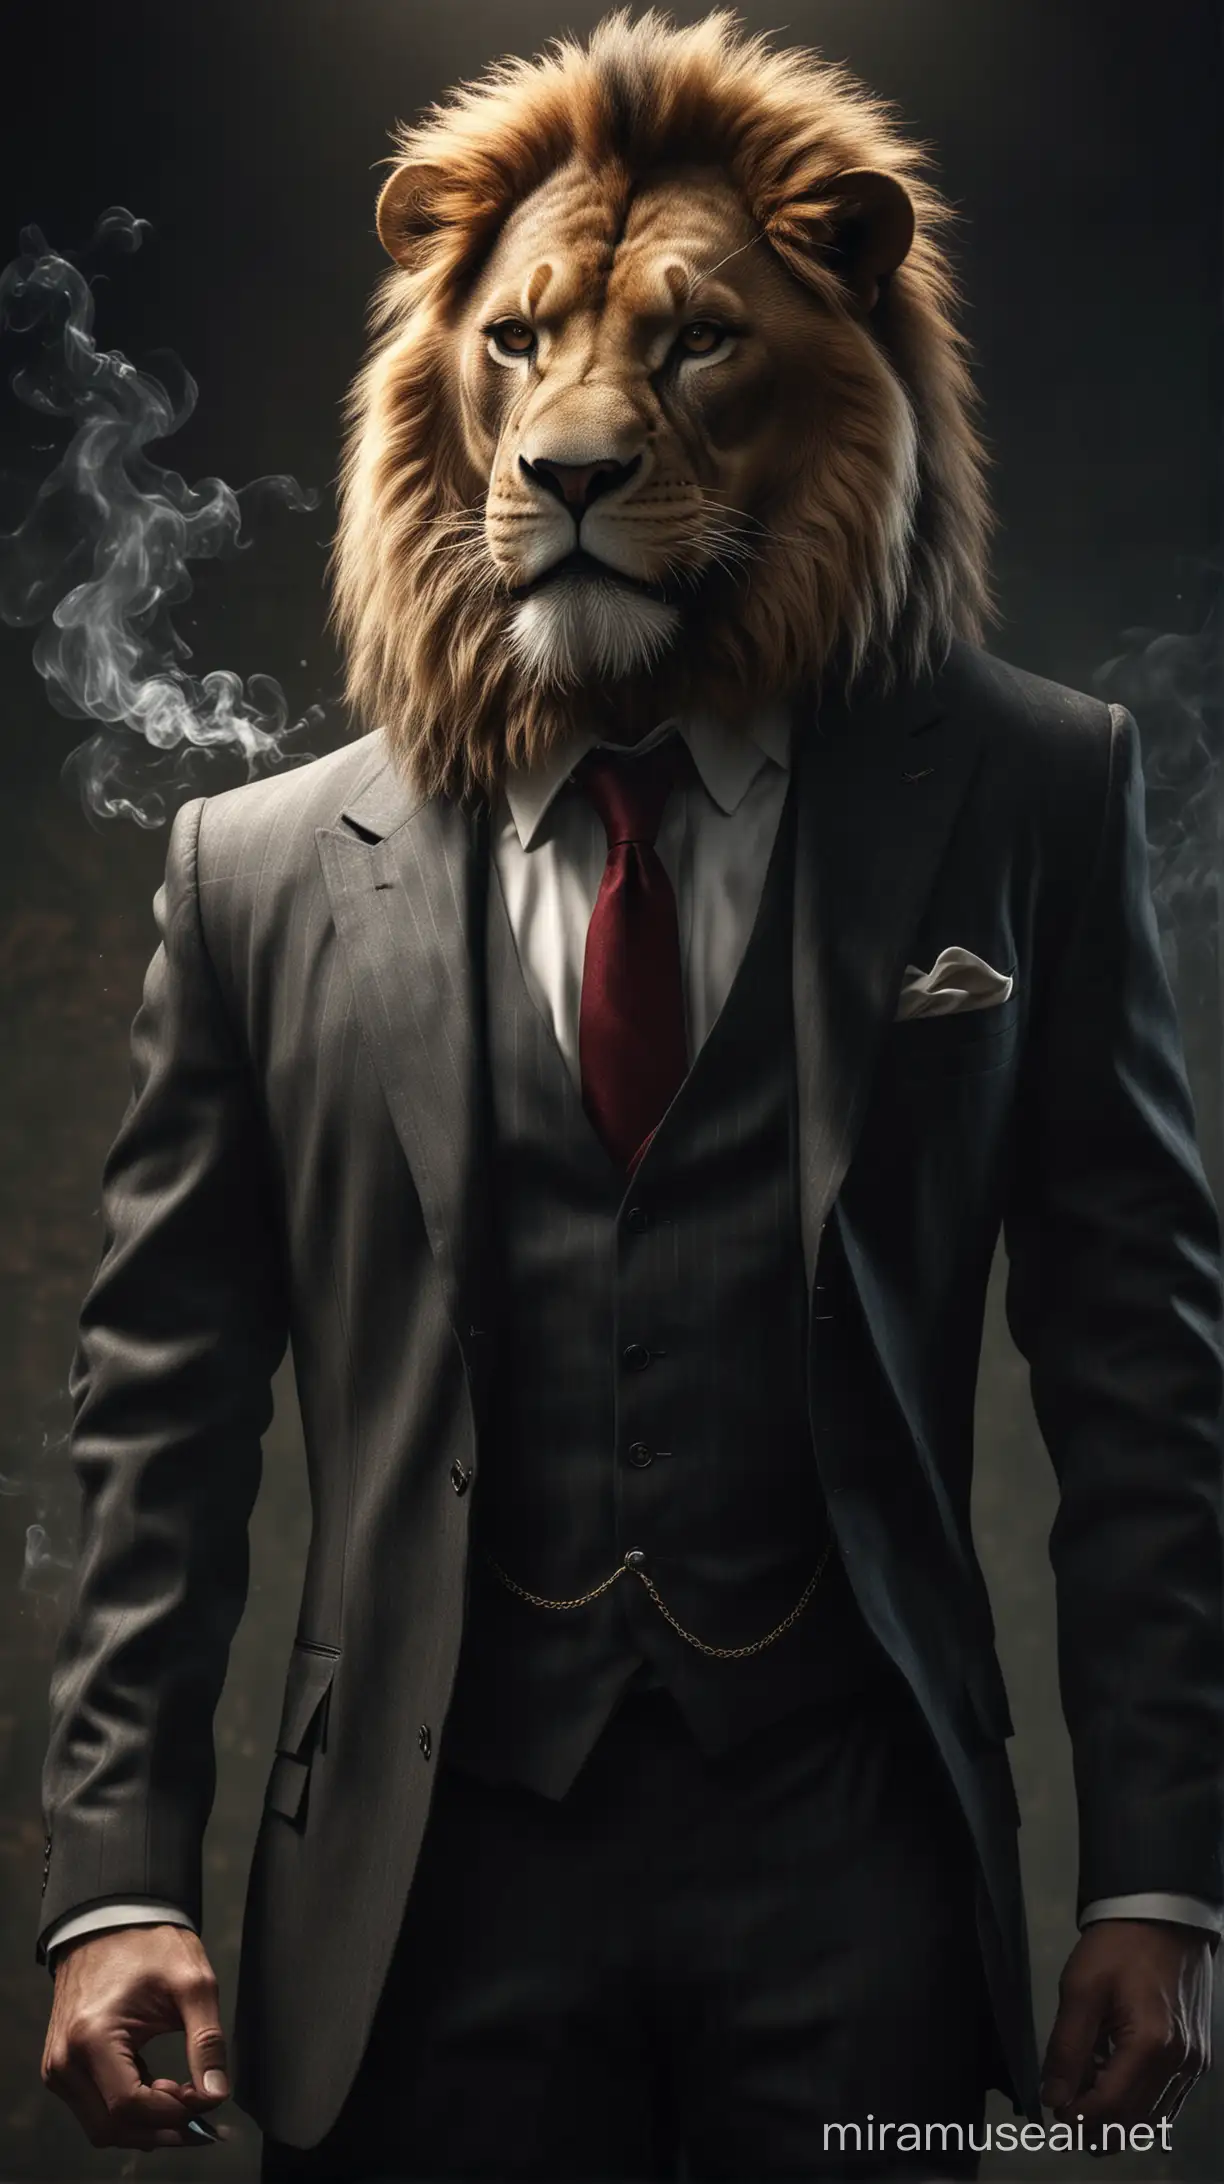 MafiaStyle Lion in Suit Smoking Under Illuminated Lights